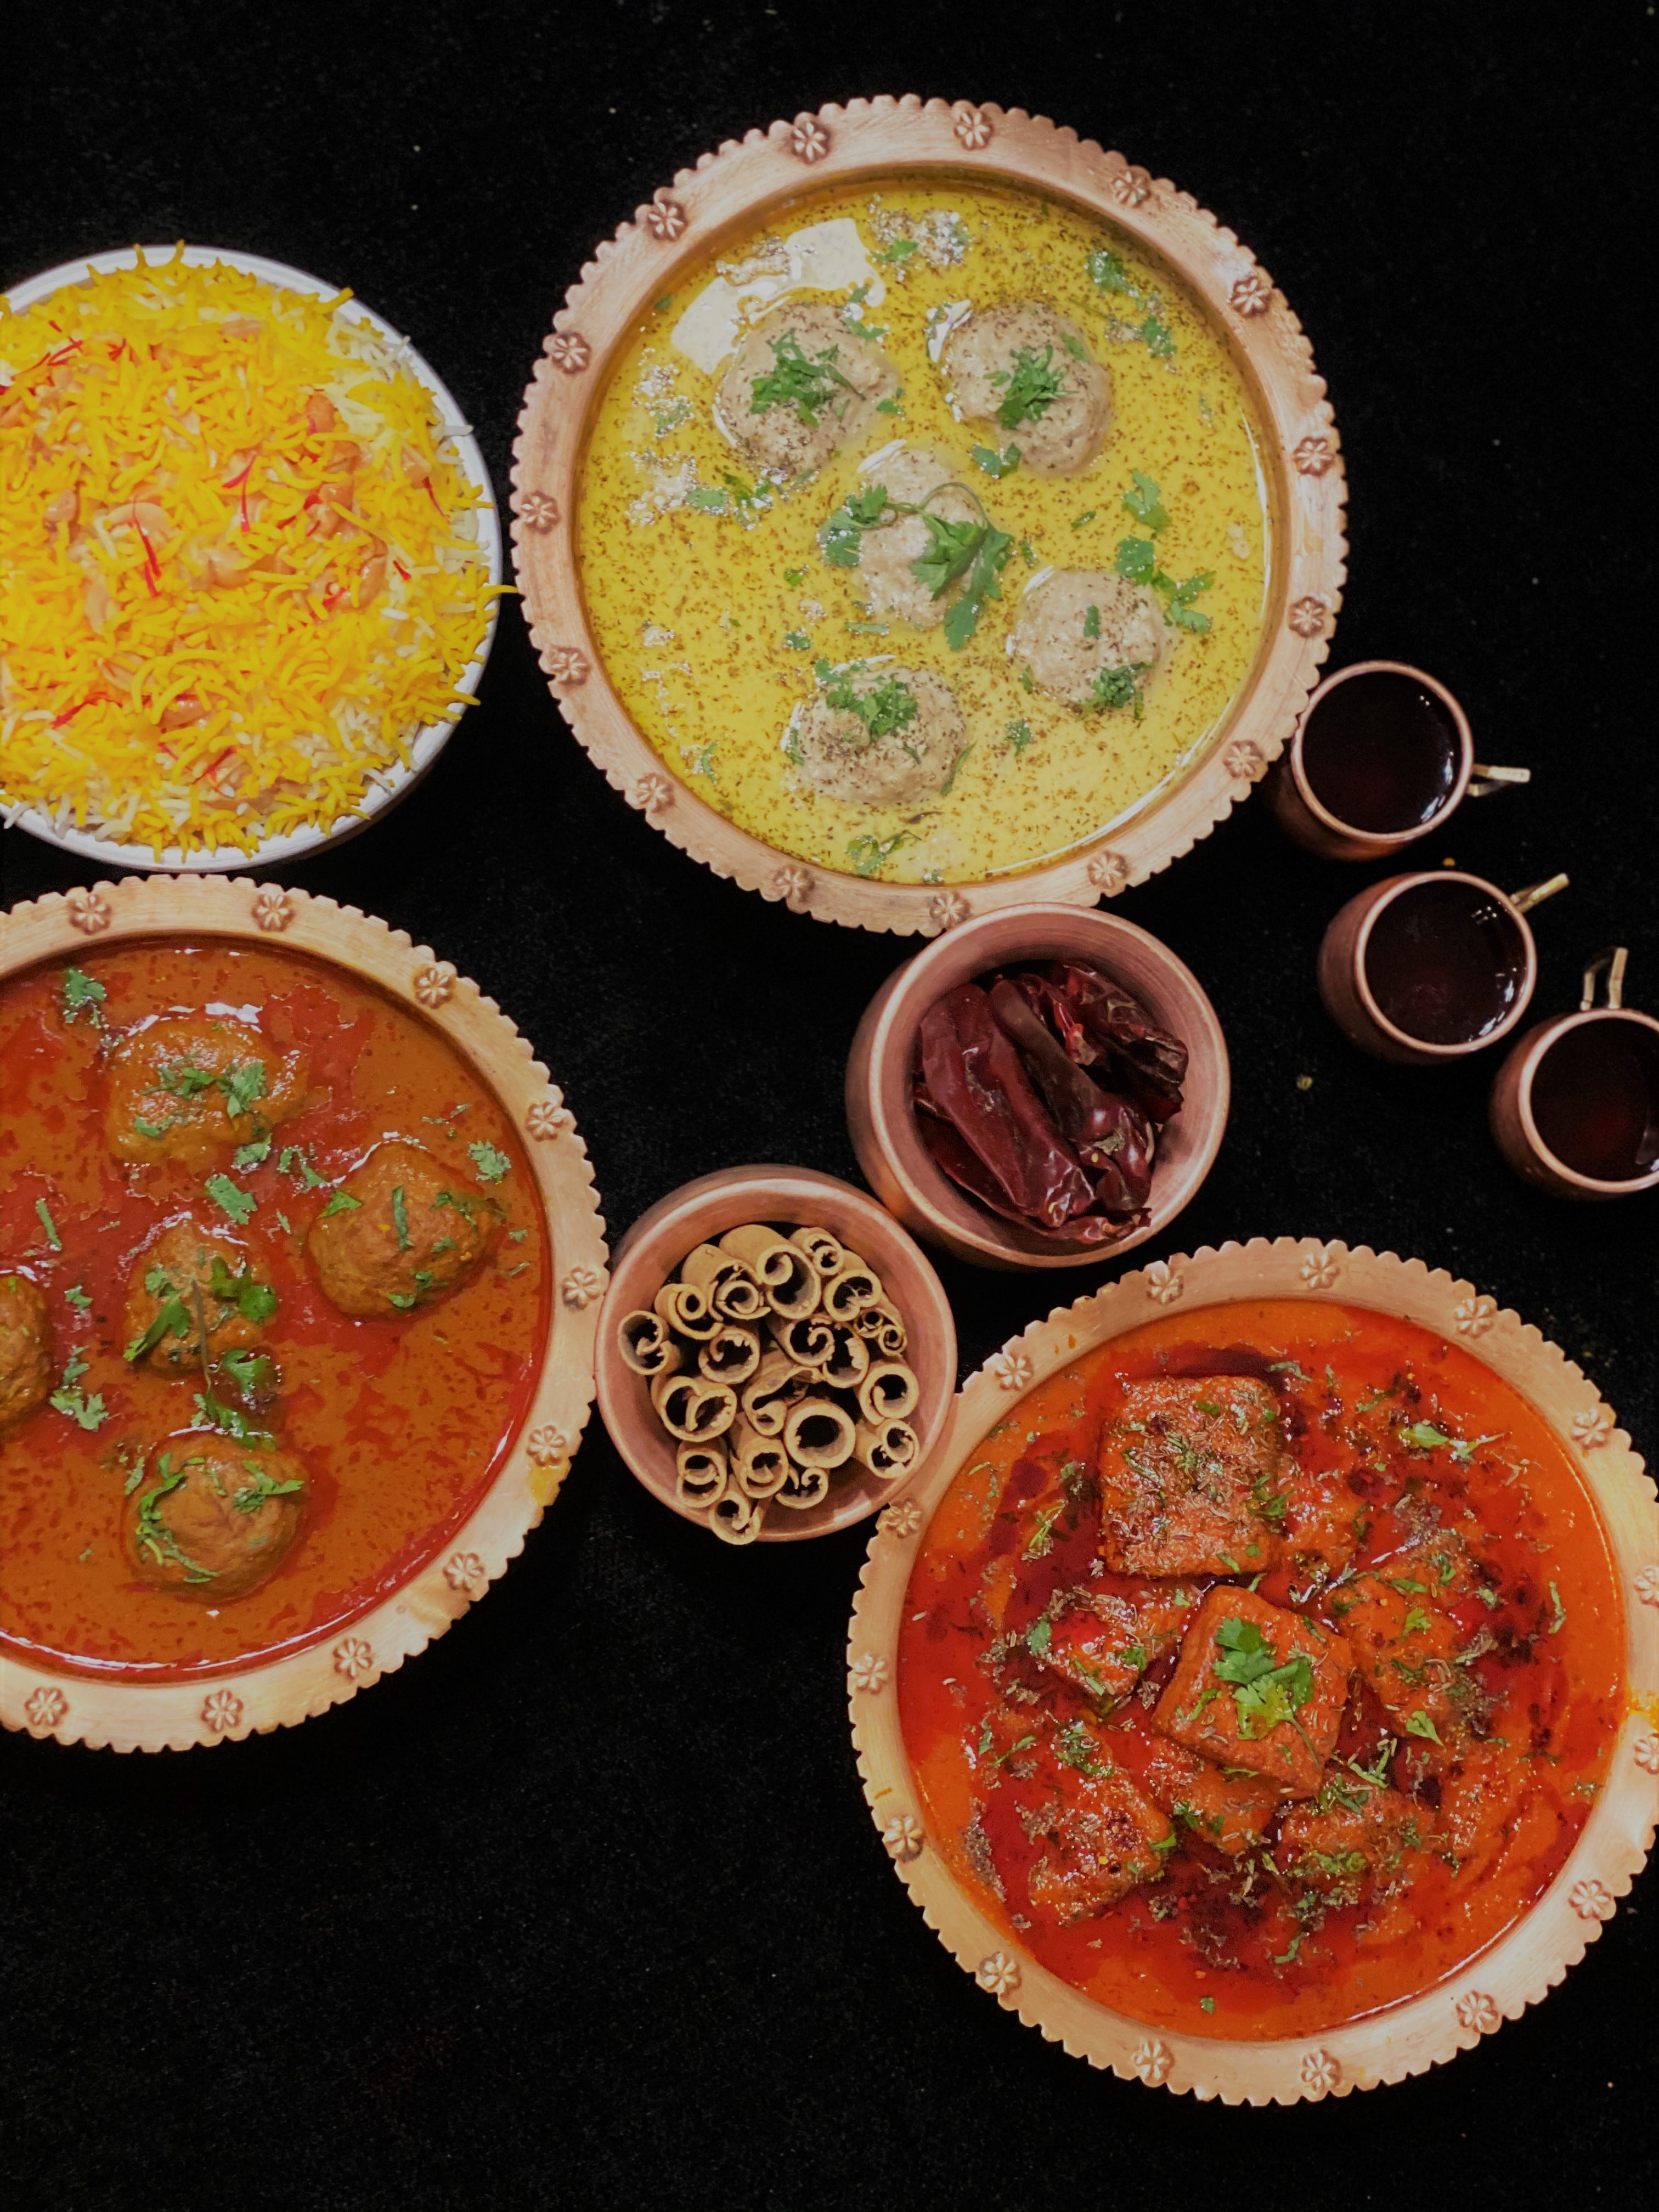 Kashmiri Dishes - Tamatar Chaman, Kashmiri Pulao Ghustaba and Rista